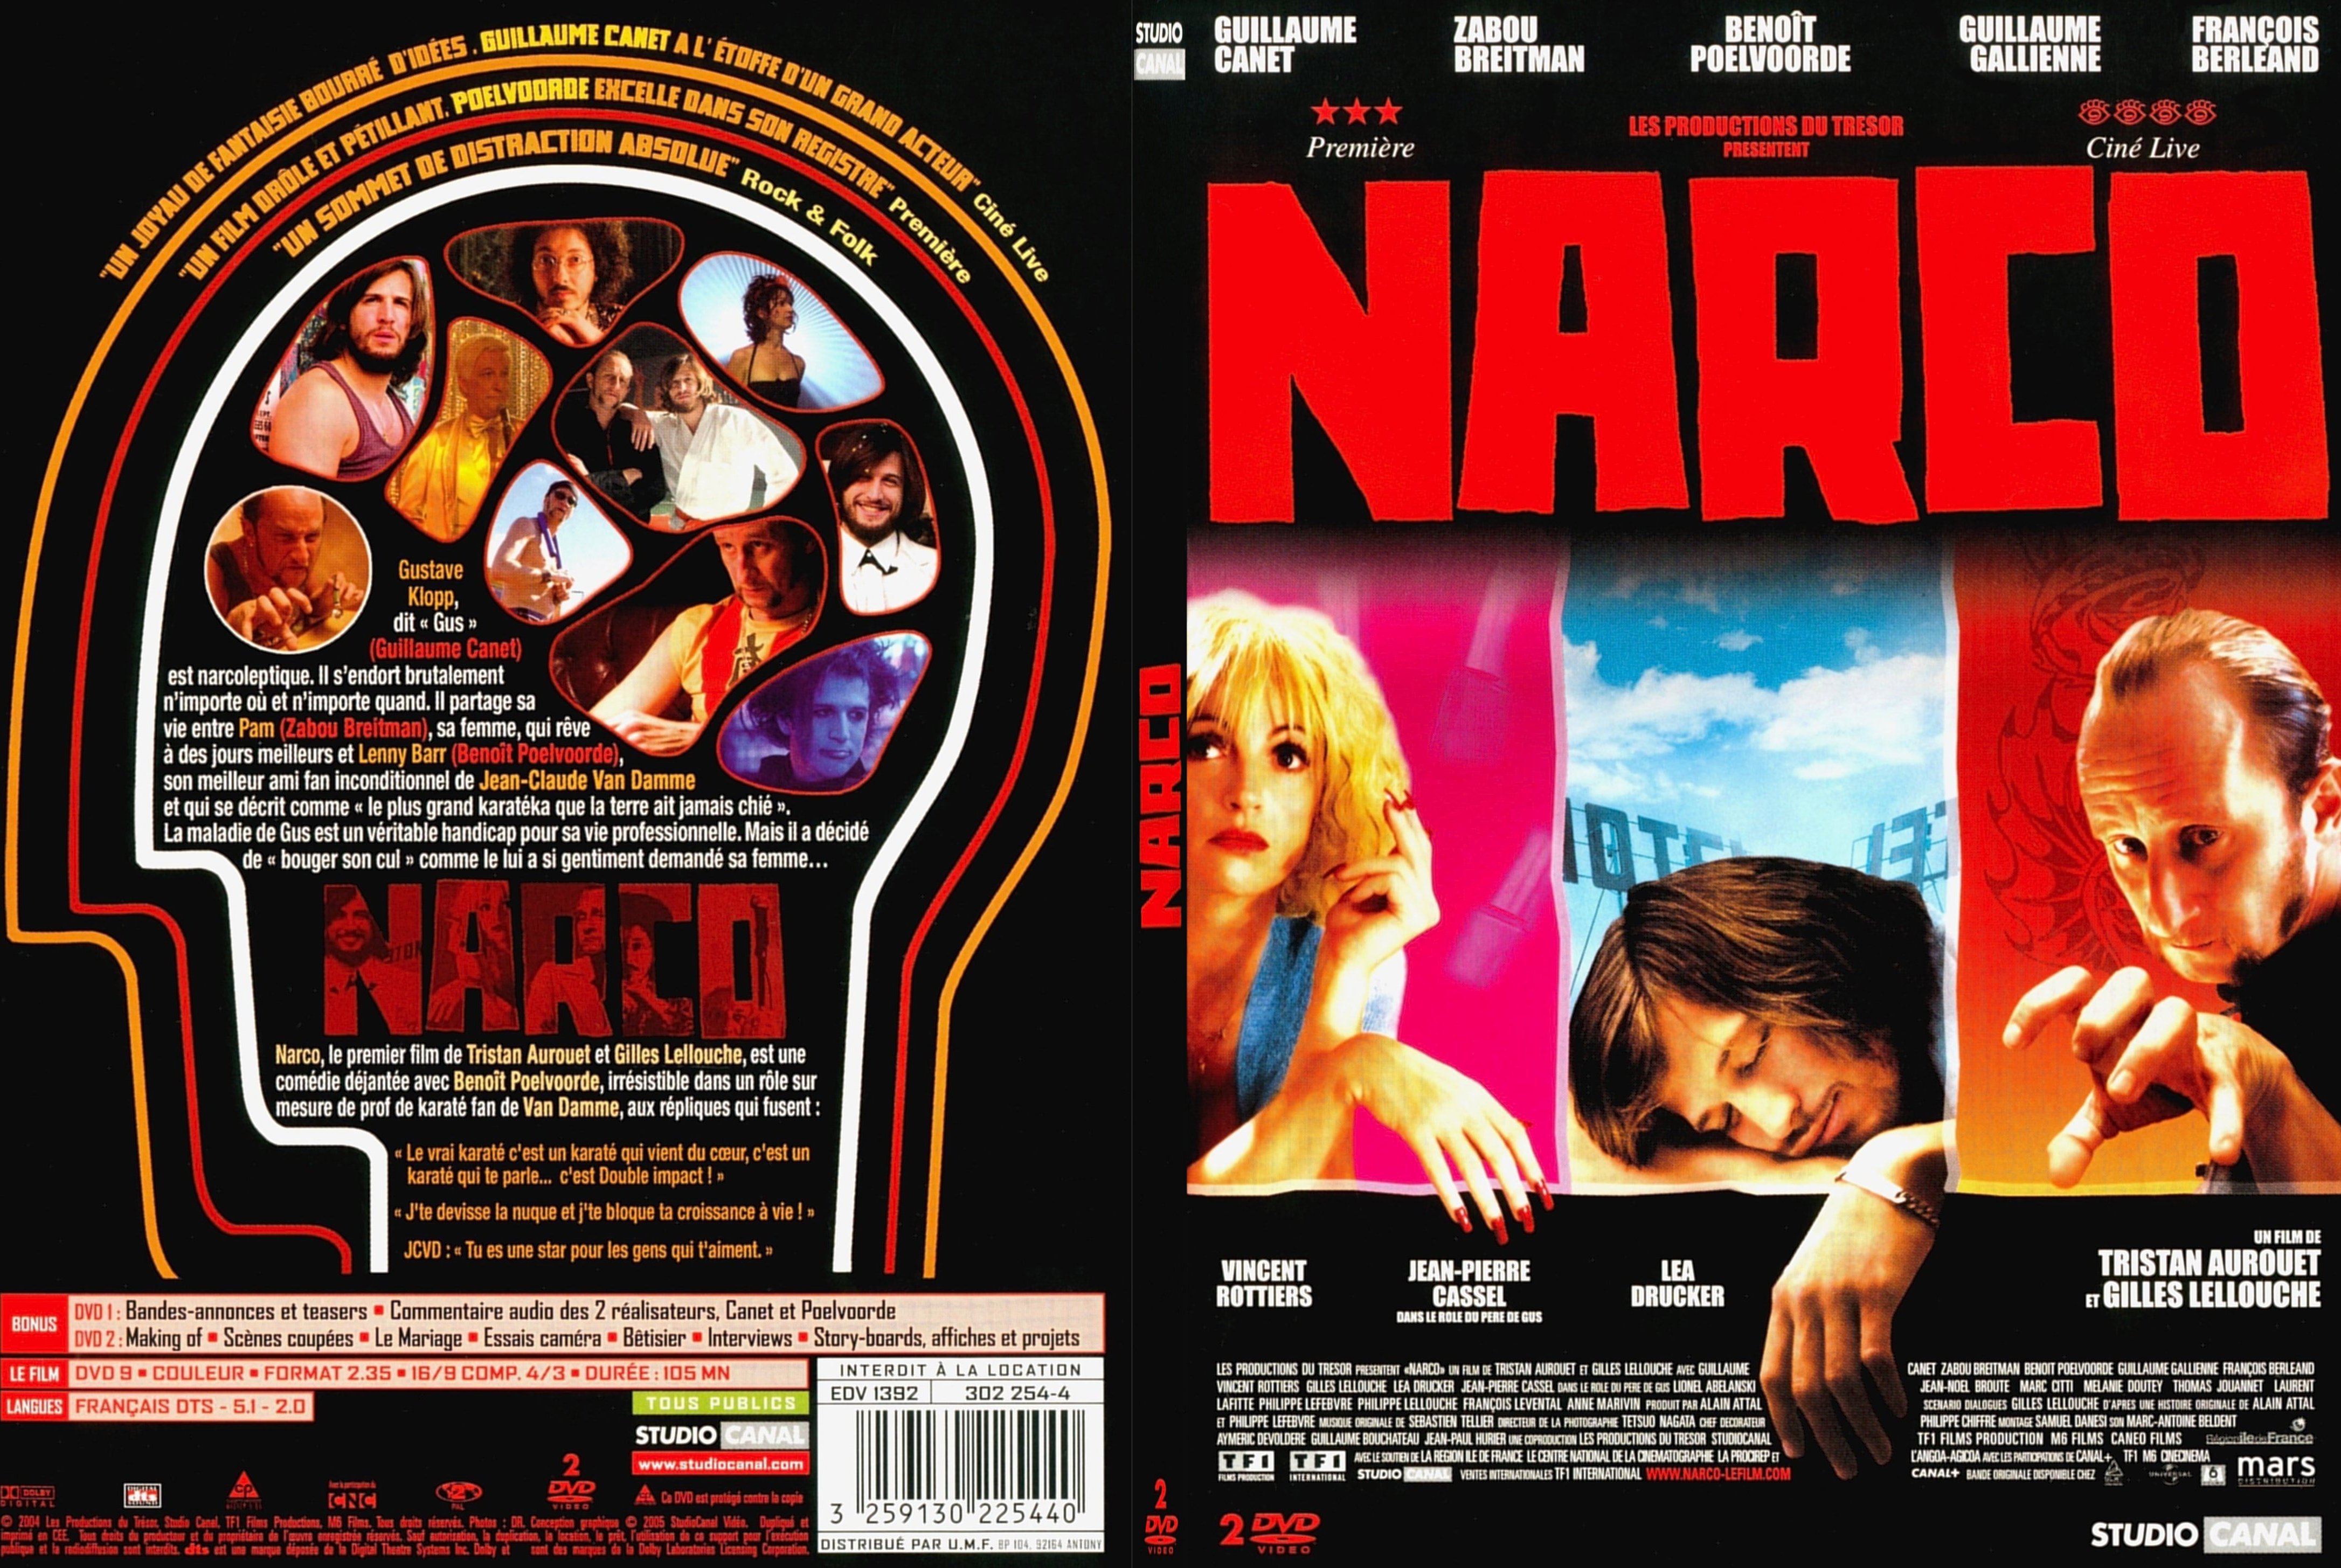 Jaquette DVD Narco - SLIM v2